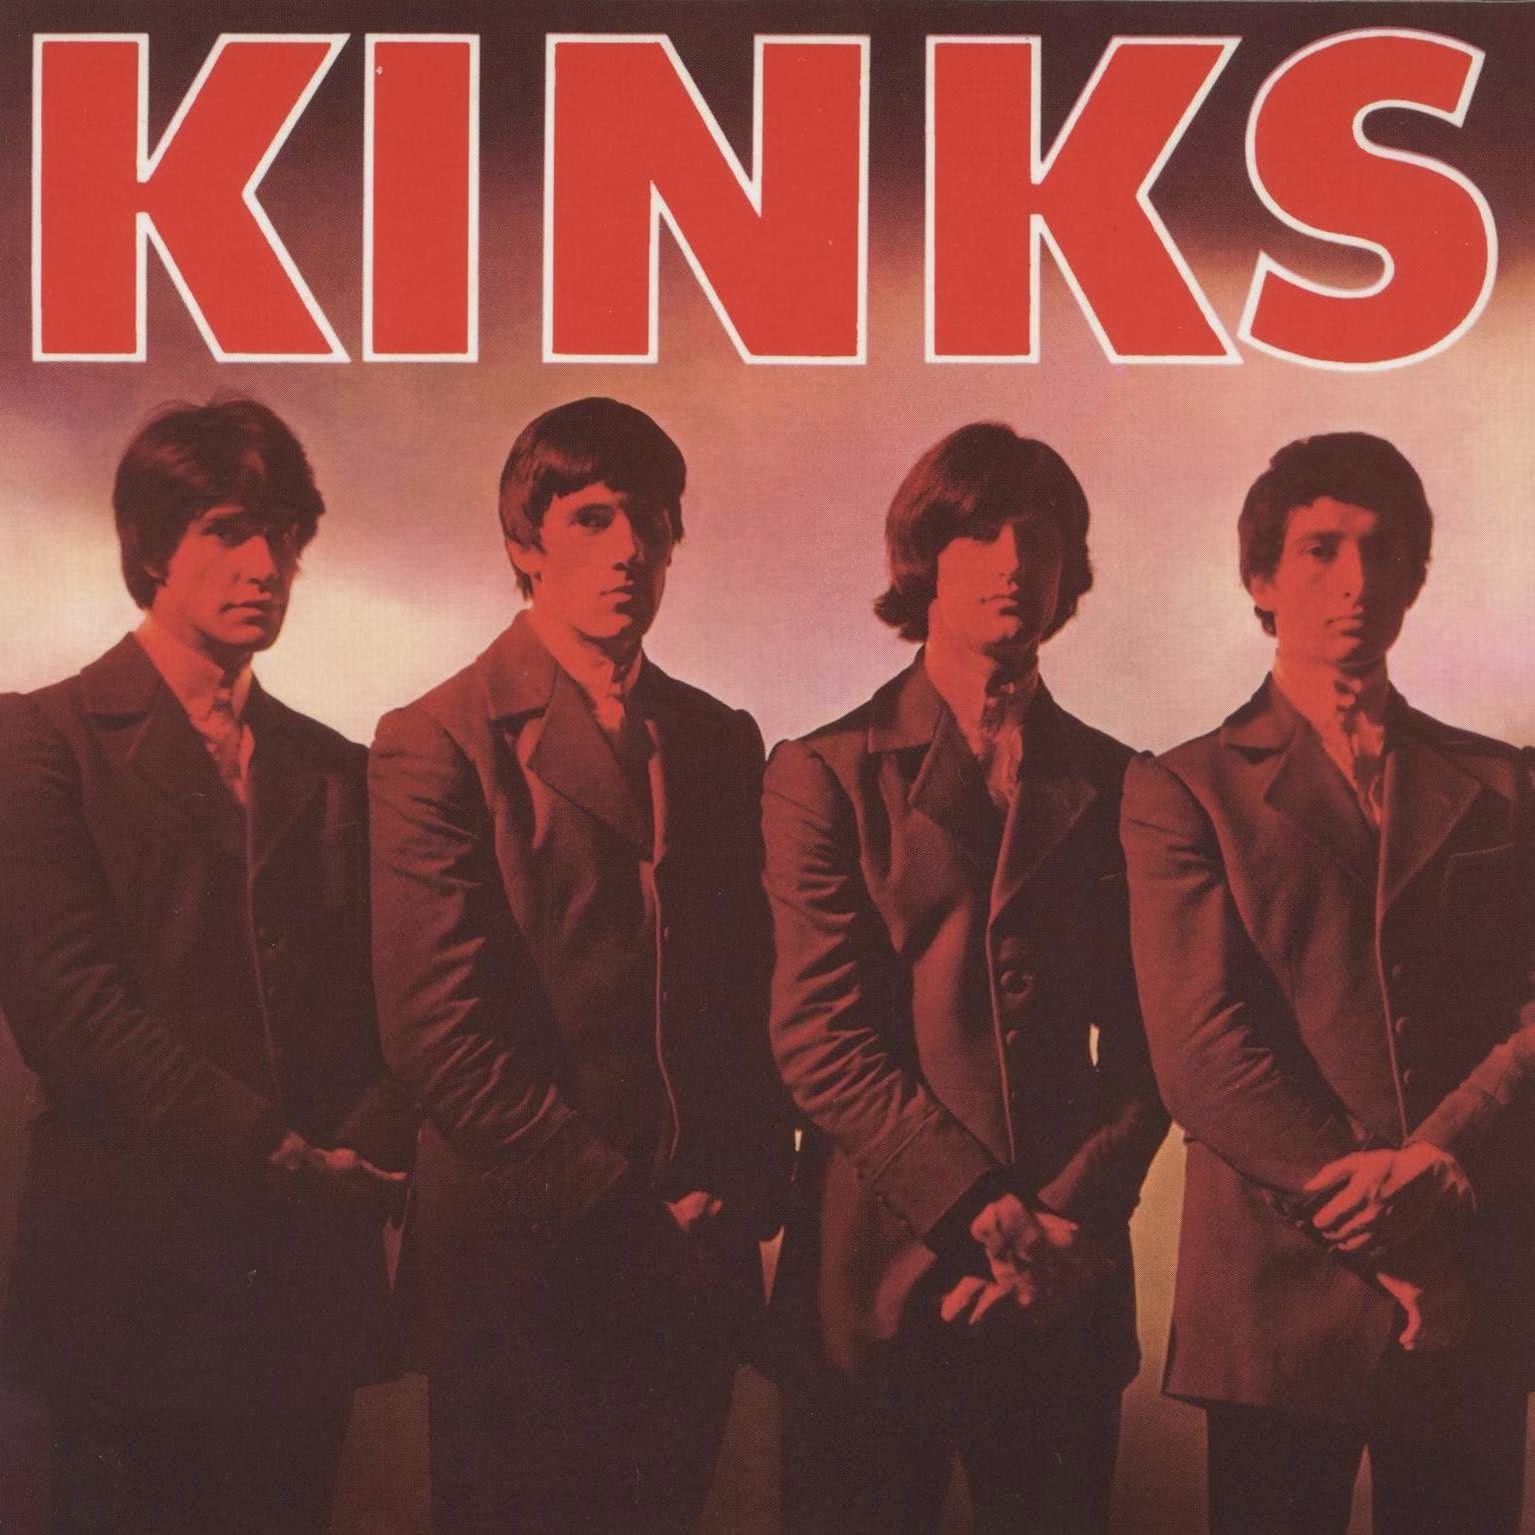 THE KINKS - Kinks - LP - Vinyl